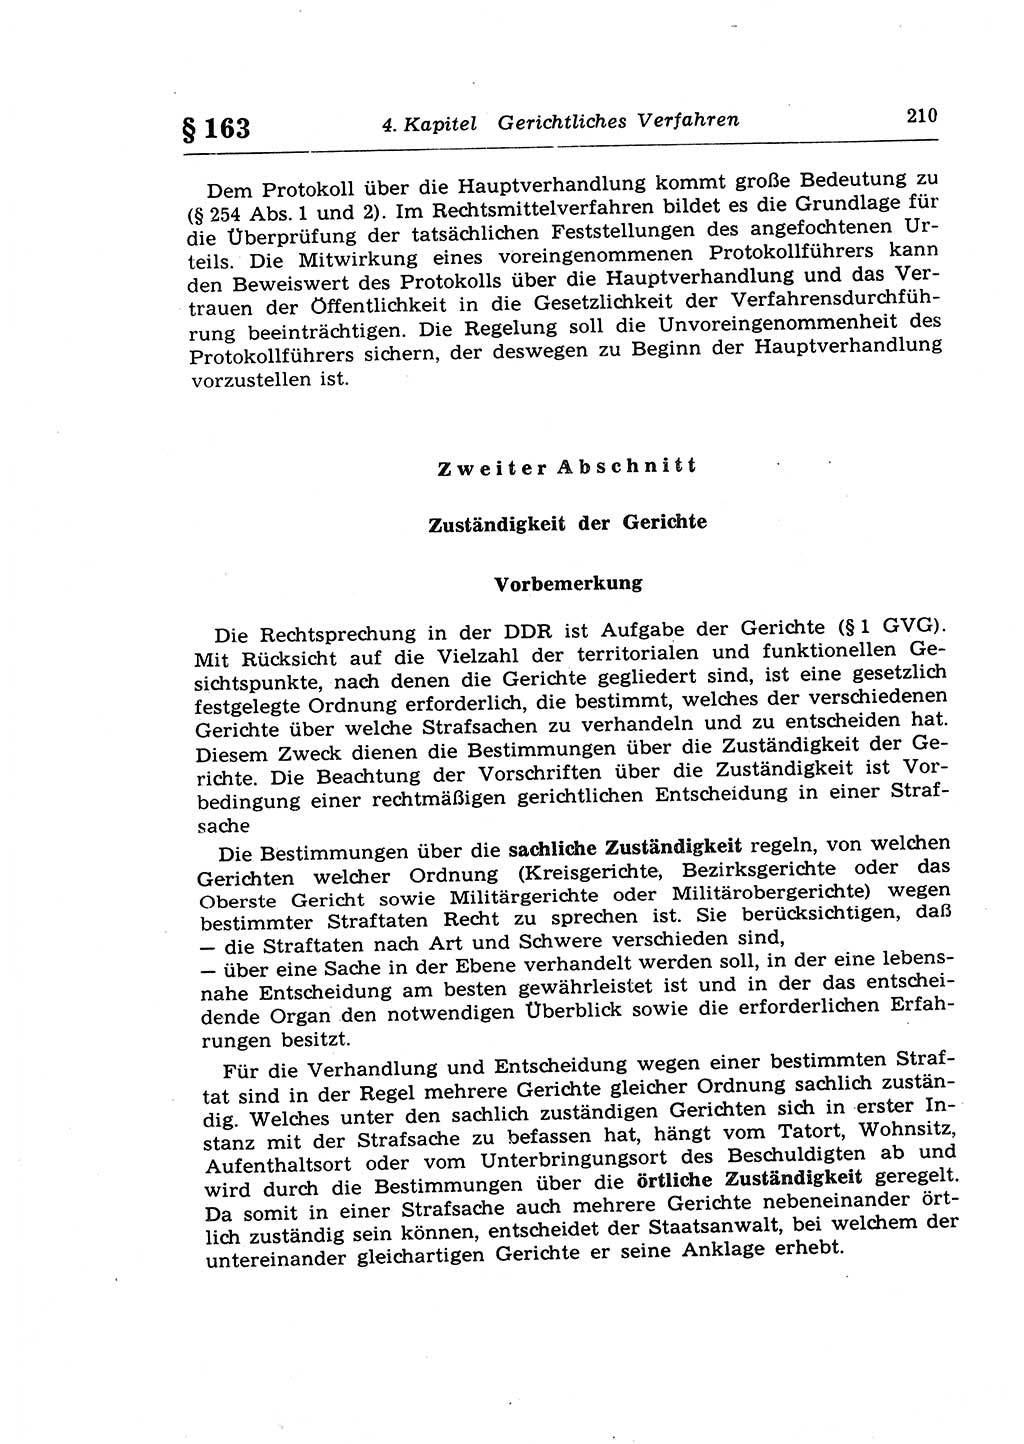 Strafprozeßrecht der DDR (Deutsche Demokratische Republik), Lehrkommentar zur Strafprozeßordnung (StPO) 1968, Seite 210 (Strafprozeßr. DDR Lehrkomm. StPO 19688, S. 210)